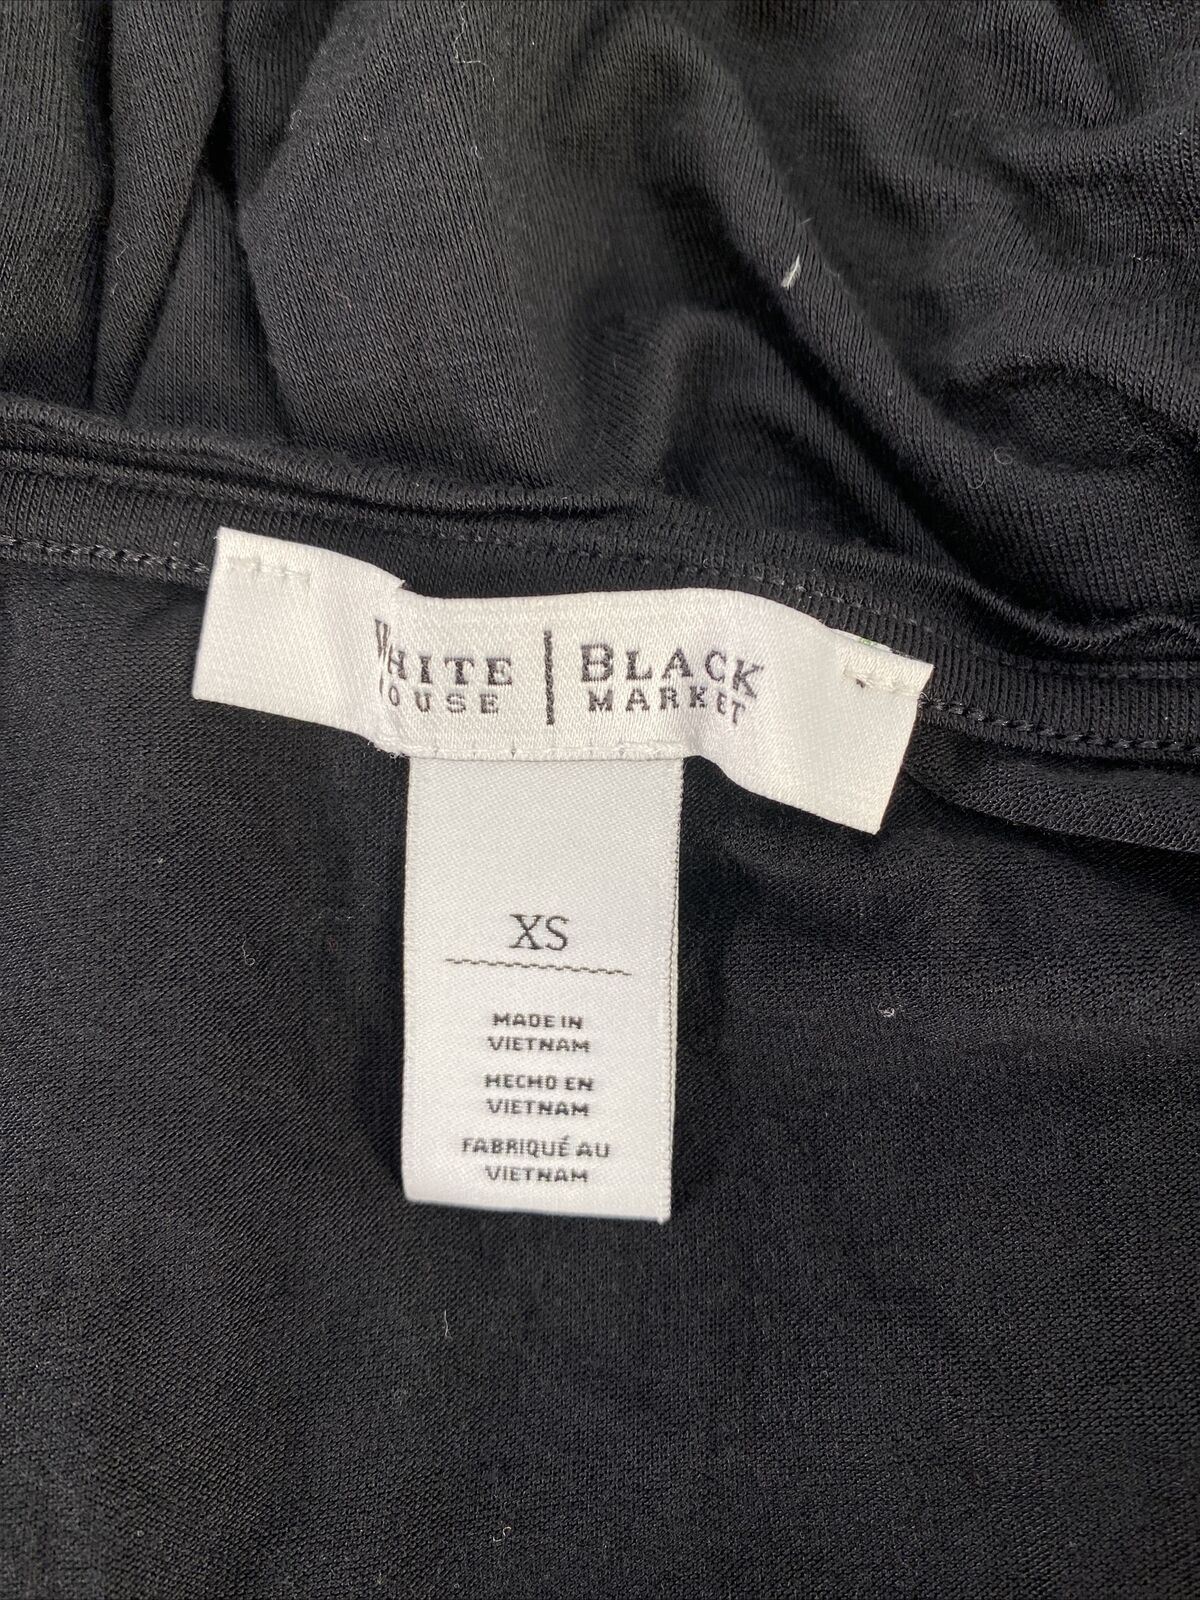 White House Black Market Women's Black Long Sleeve V-Neck T-Shirt - XS